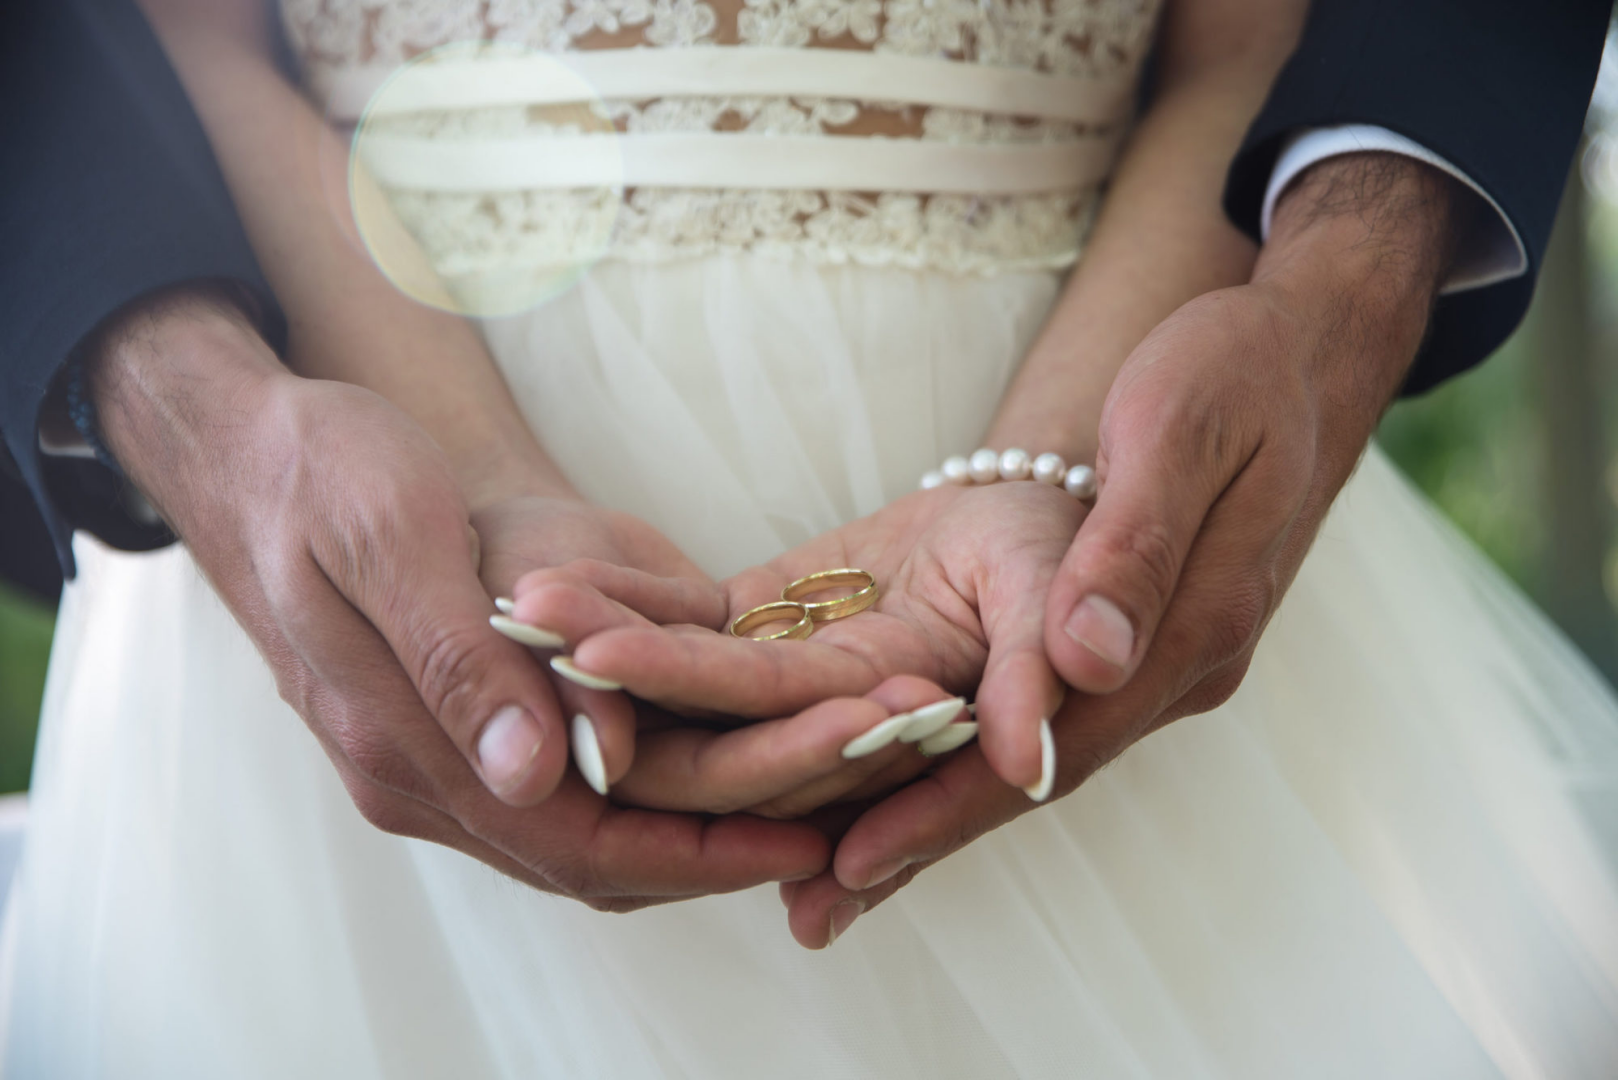 Брак. Обручальные кольца на руках жениха и невесты. Свадьба руки с кольцами. Фото обручальных колец на руках жениха и невесты. Вступление в брак с заключенным